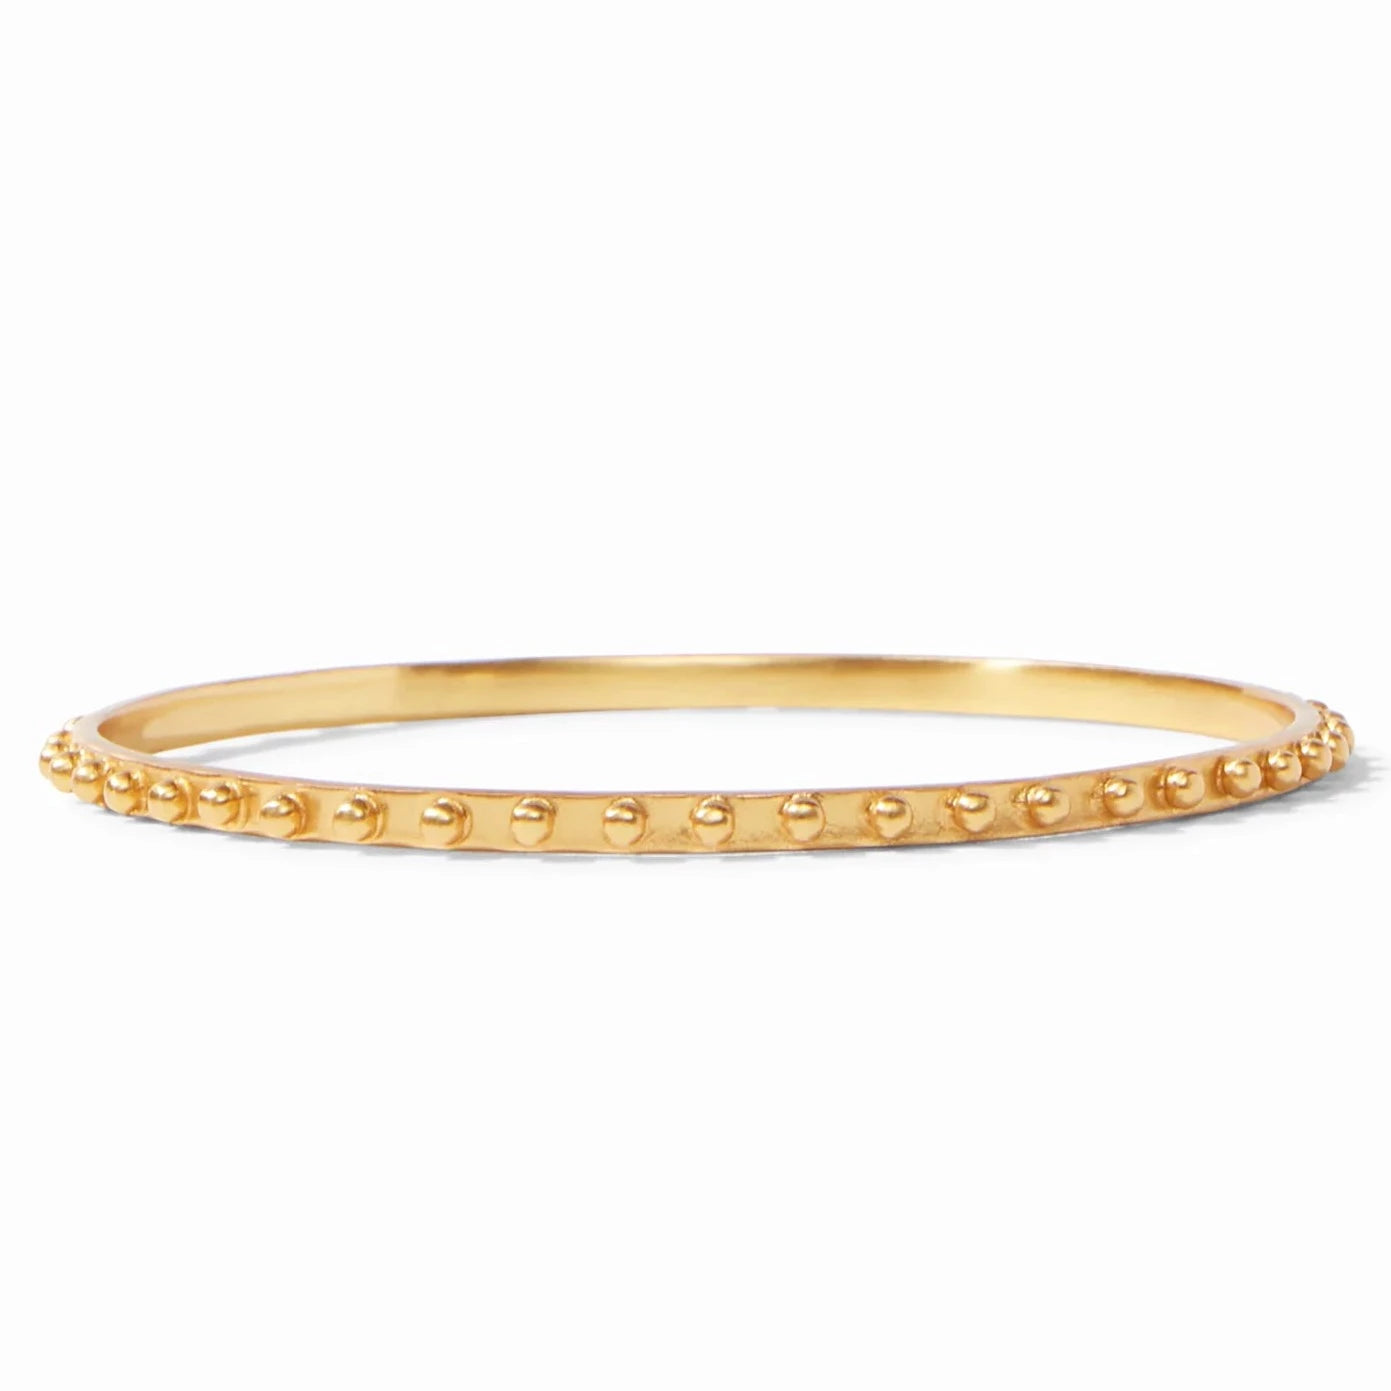 Julie Vos 24K Gold Plated SoHo Bangle Bracelet, Medium